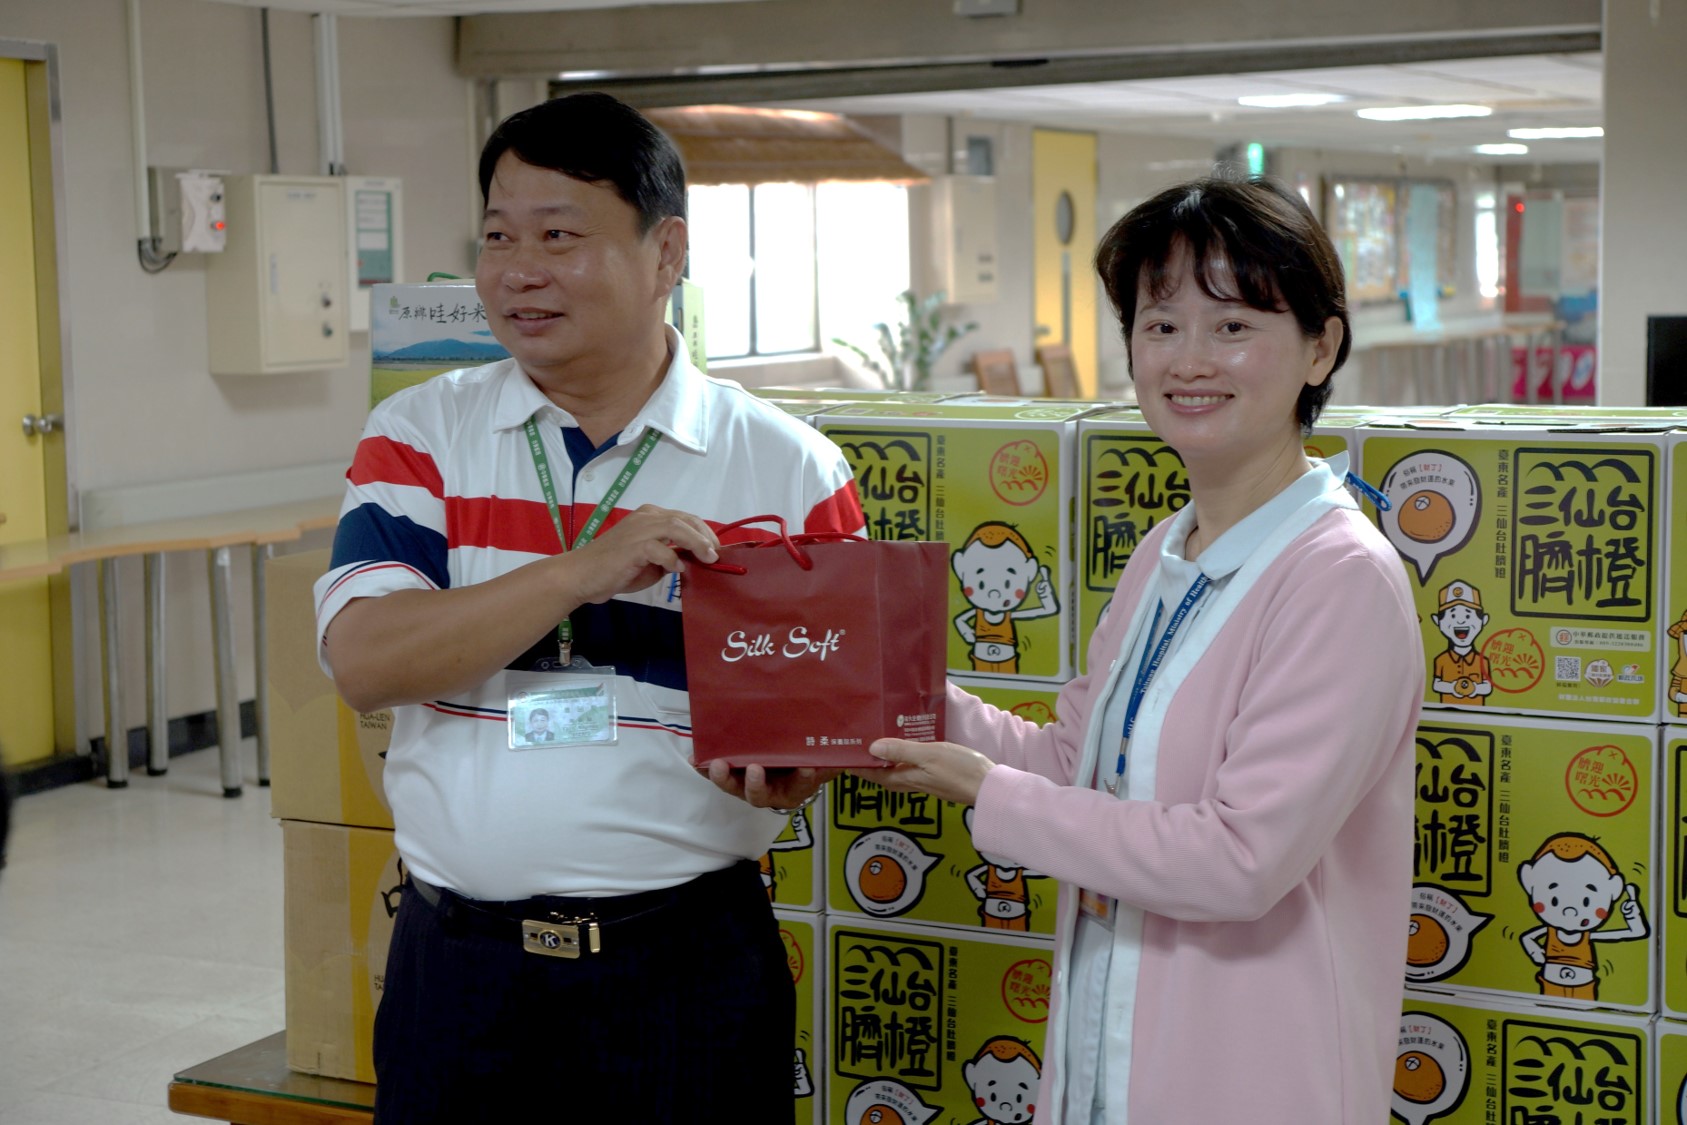 臺東郵局與台灣郵政協會共同舉辦「關懷農產行銷暨送愛至臺東醫院護理之家」公益活動